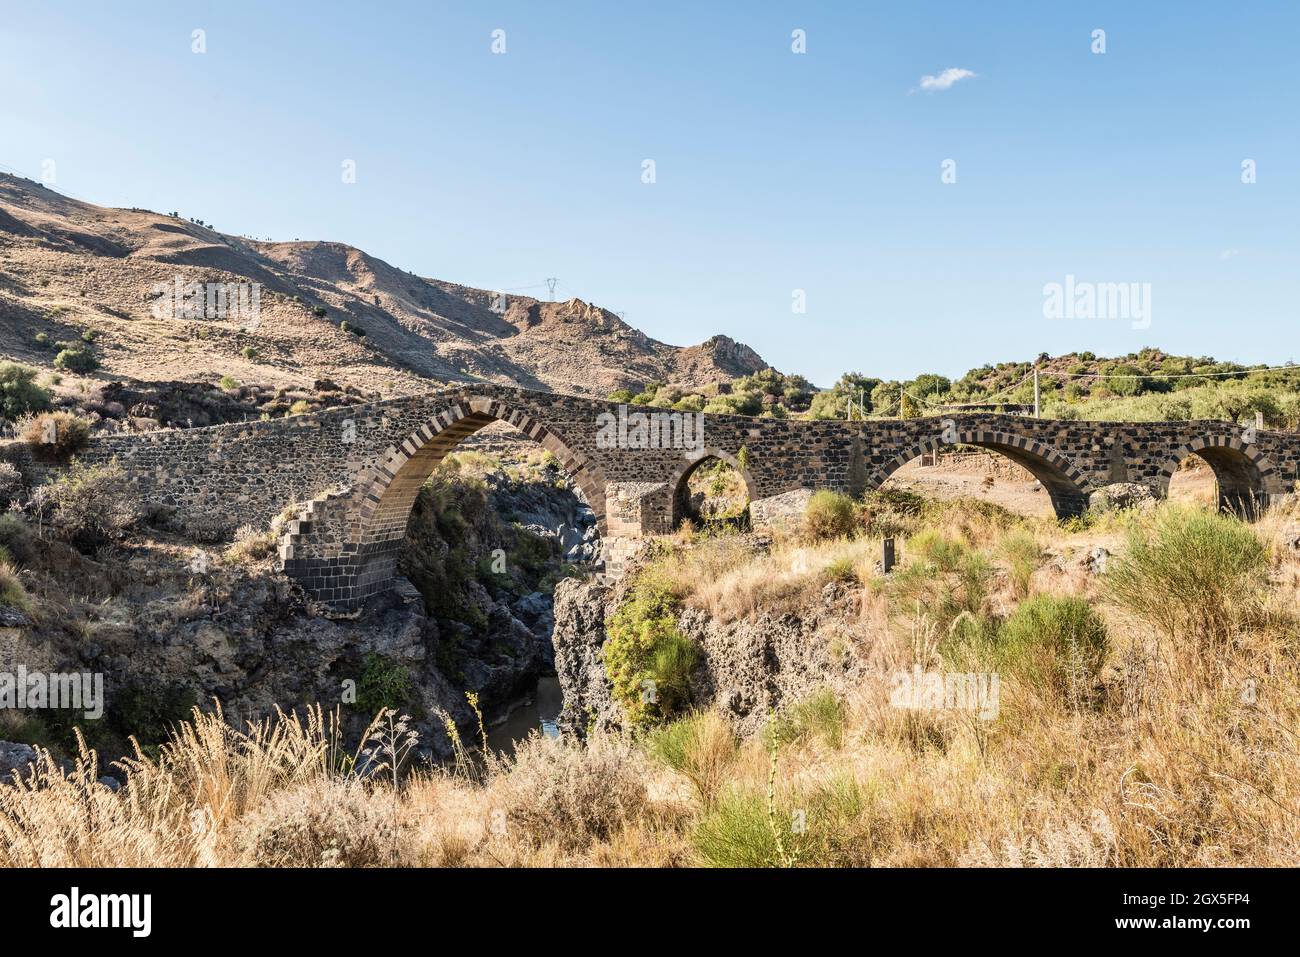 Il Ponte dei Saraceni (Ponte dei Saraceni) sul fiume Simeto, nei pressi di Adrano, Sicilia. Risalente al 11c, è stato ricostruito più volte Foto Stock